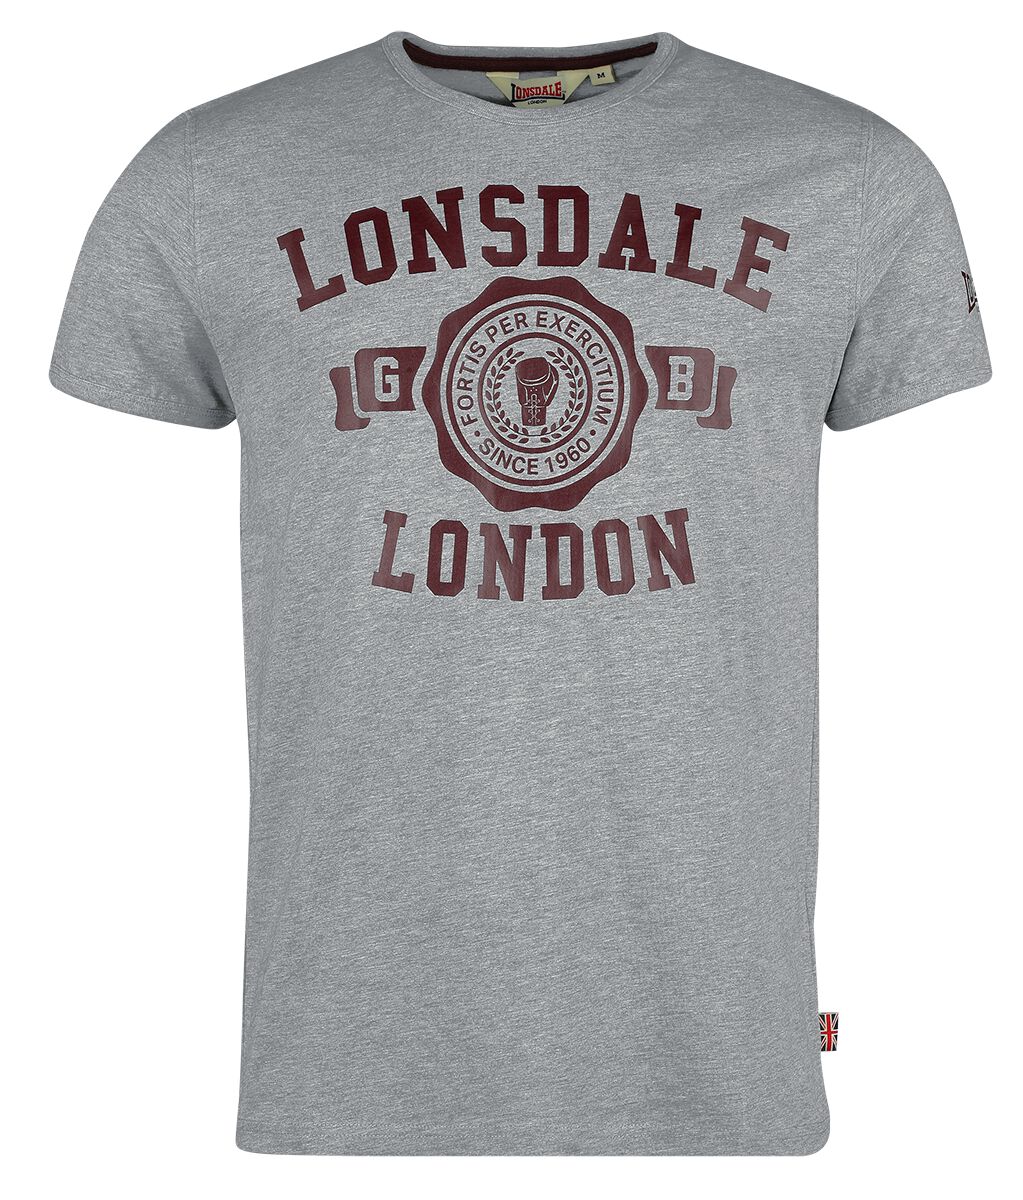 Lonsdale London T-Shirt - MURRISTER - S bis XXL - für Männer - Größe M - grau meliert